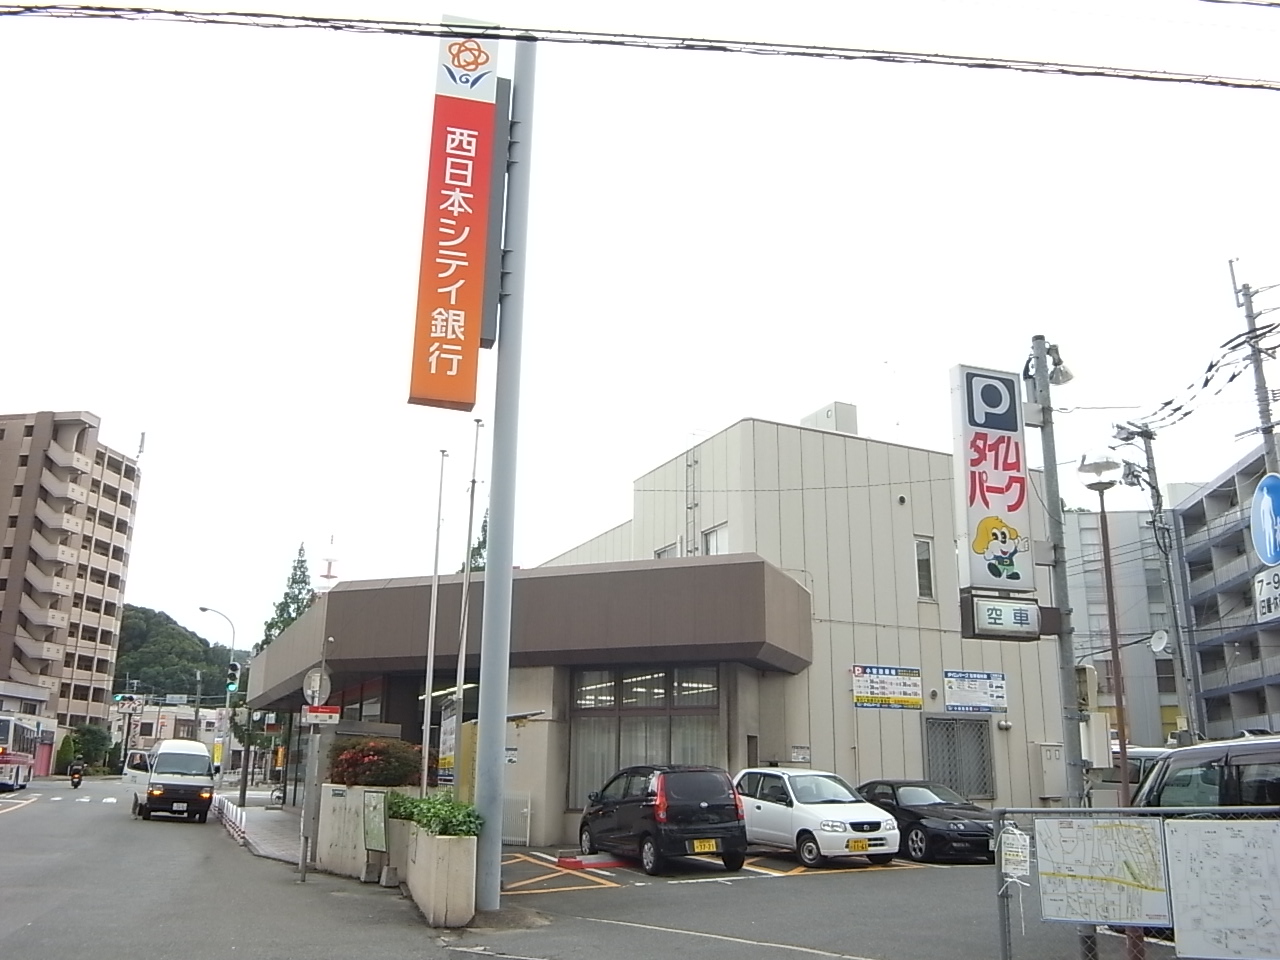 Bank. 233m to Nishi-Nippon City Bank Ozasa Branch (Bank)